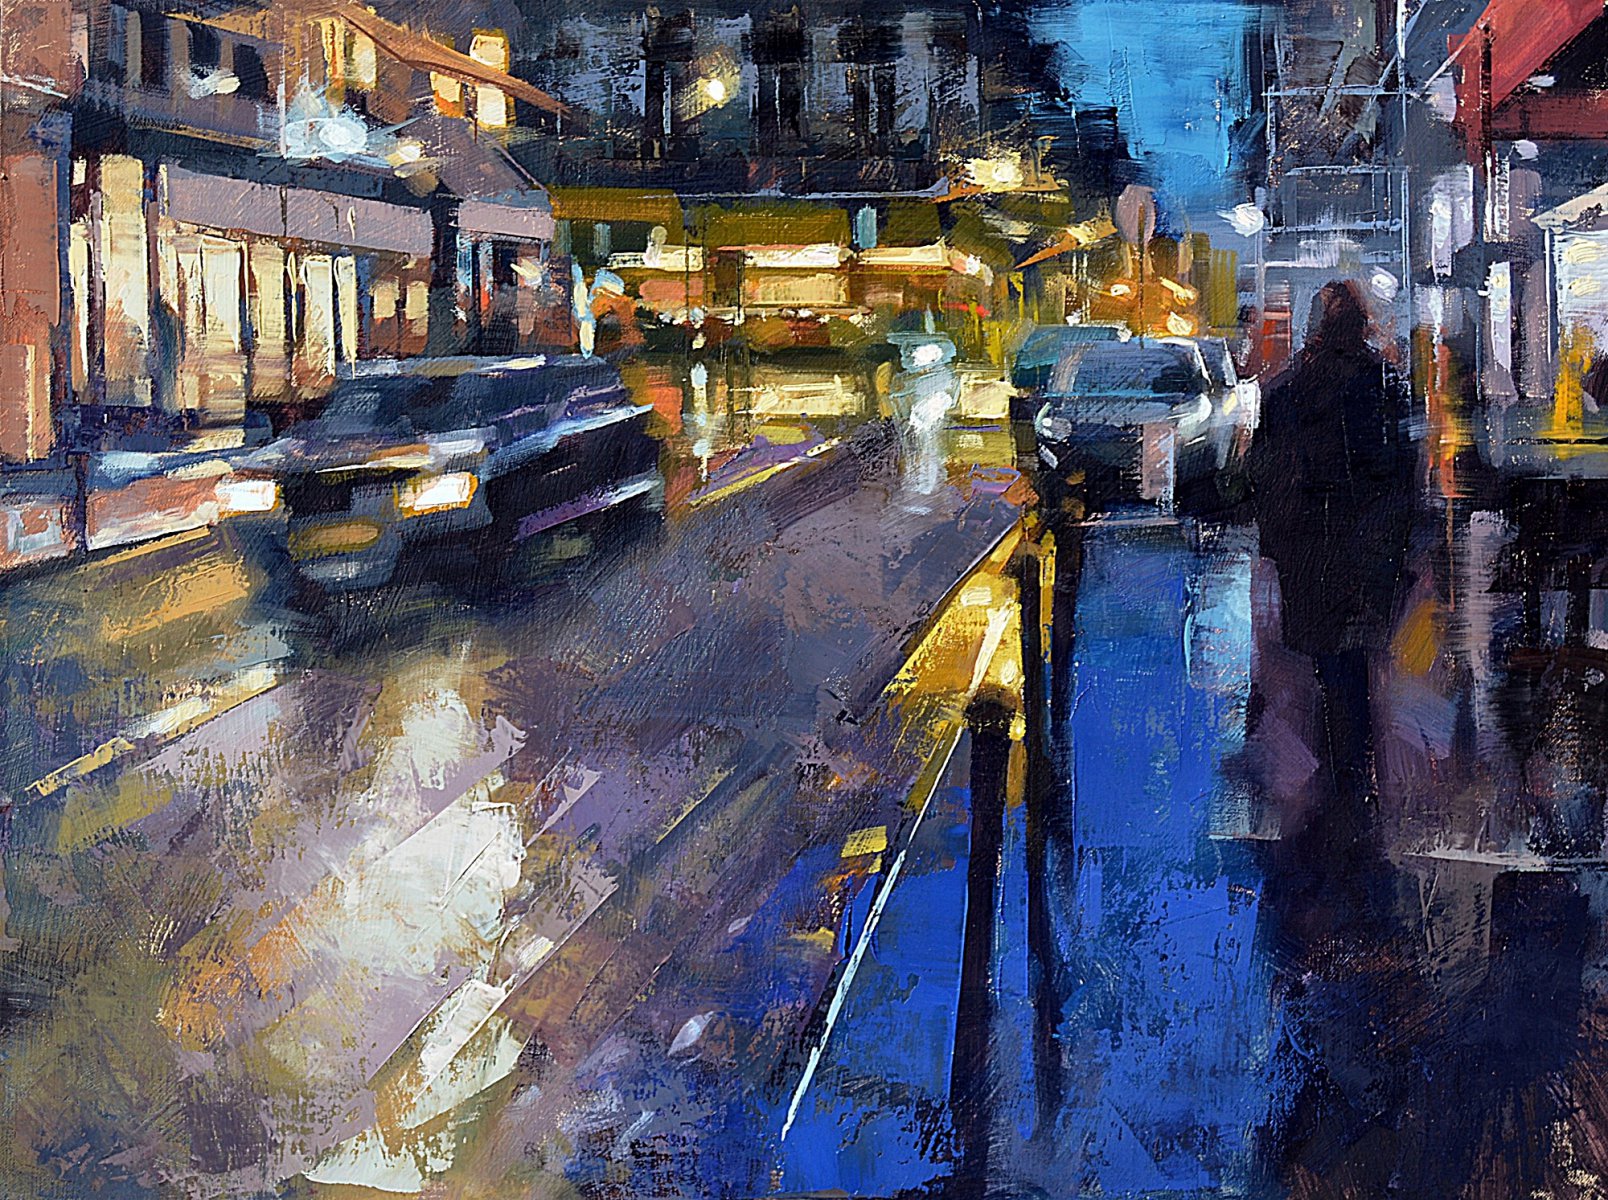 The 9th Arrondissement at Night, Paris - Desmond O’Hagan